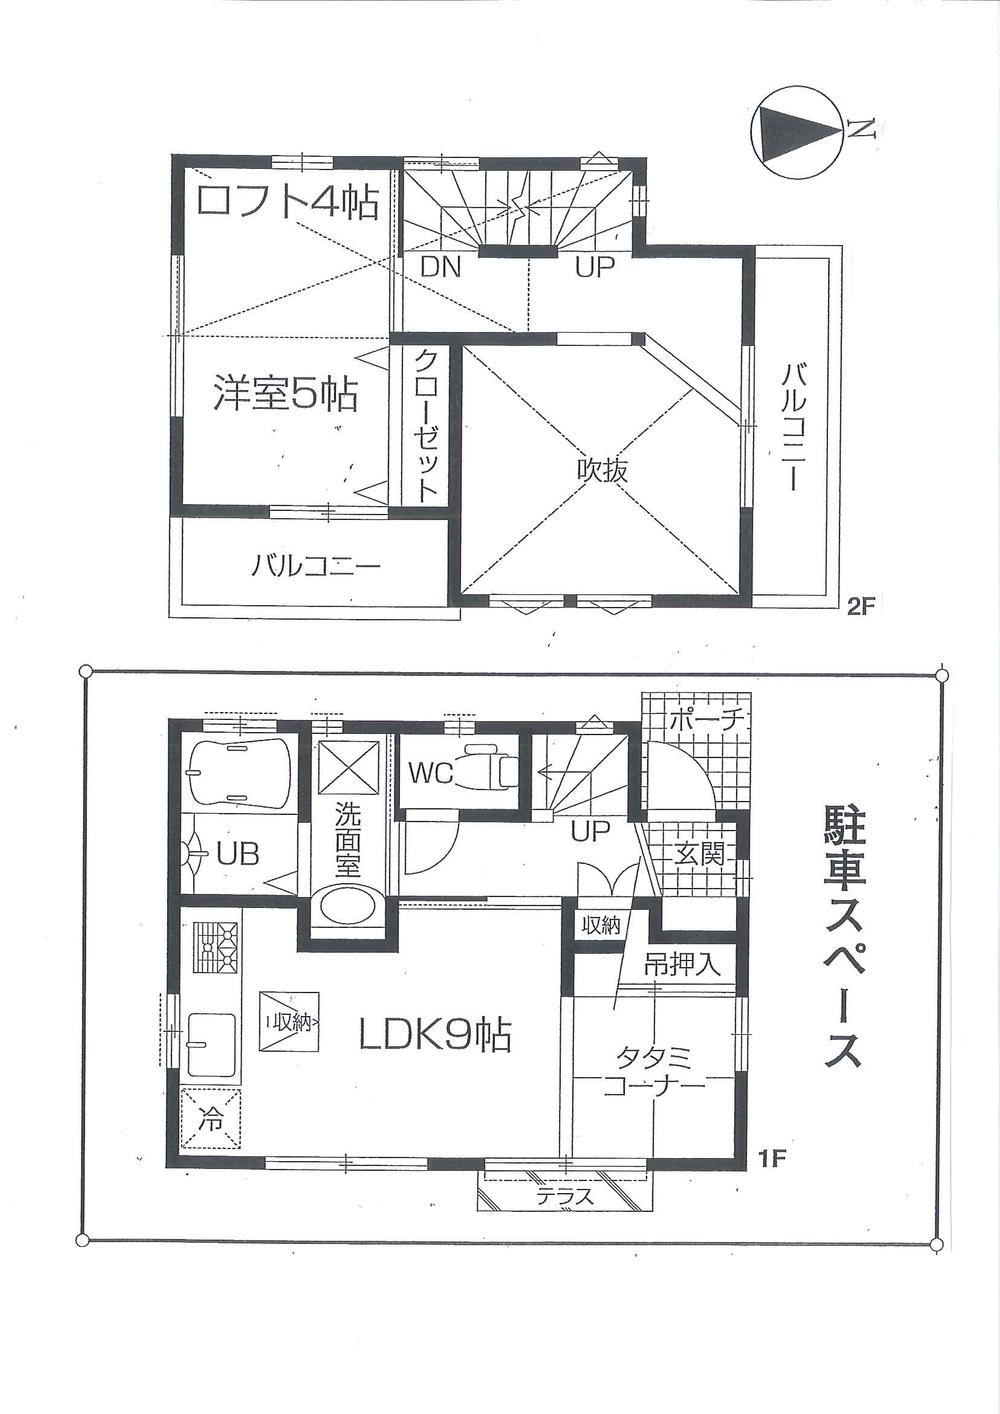 Floor plan. 15.8 million yen, 2LDK, Land area 51.8 sq m , Building area 41.38 sq m